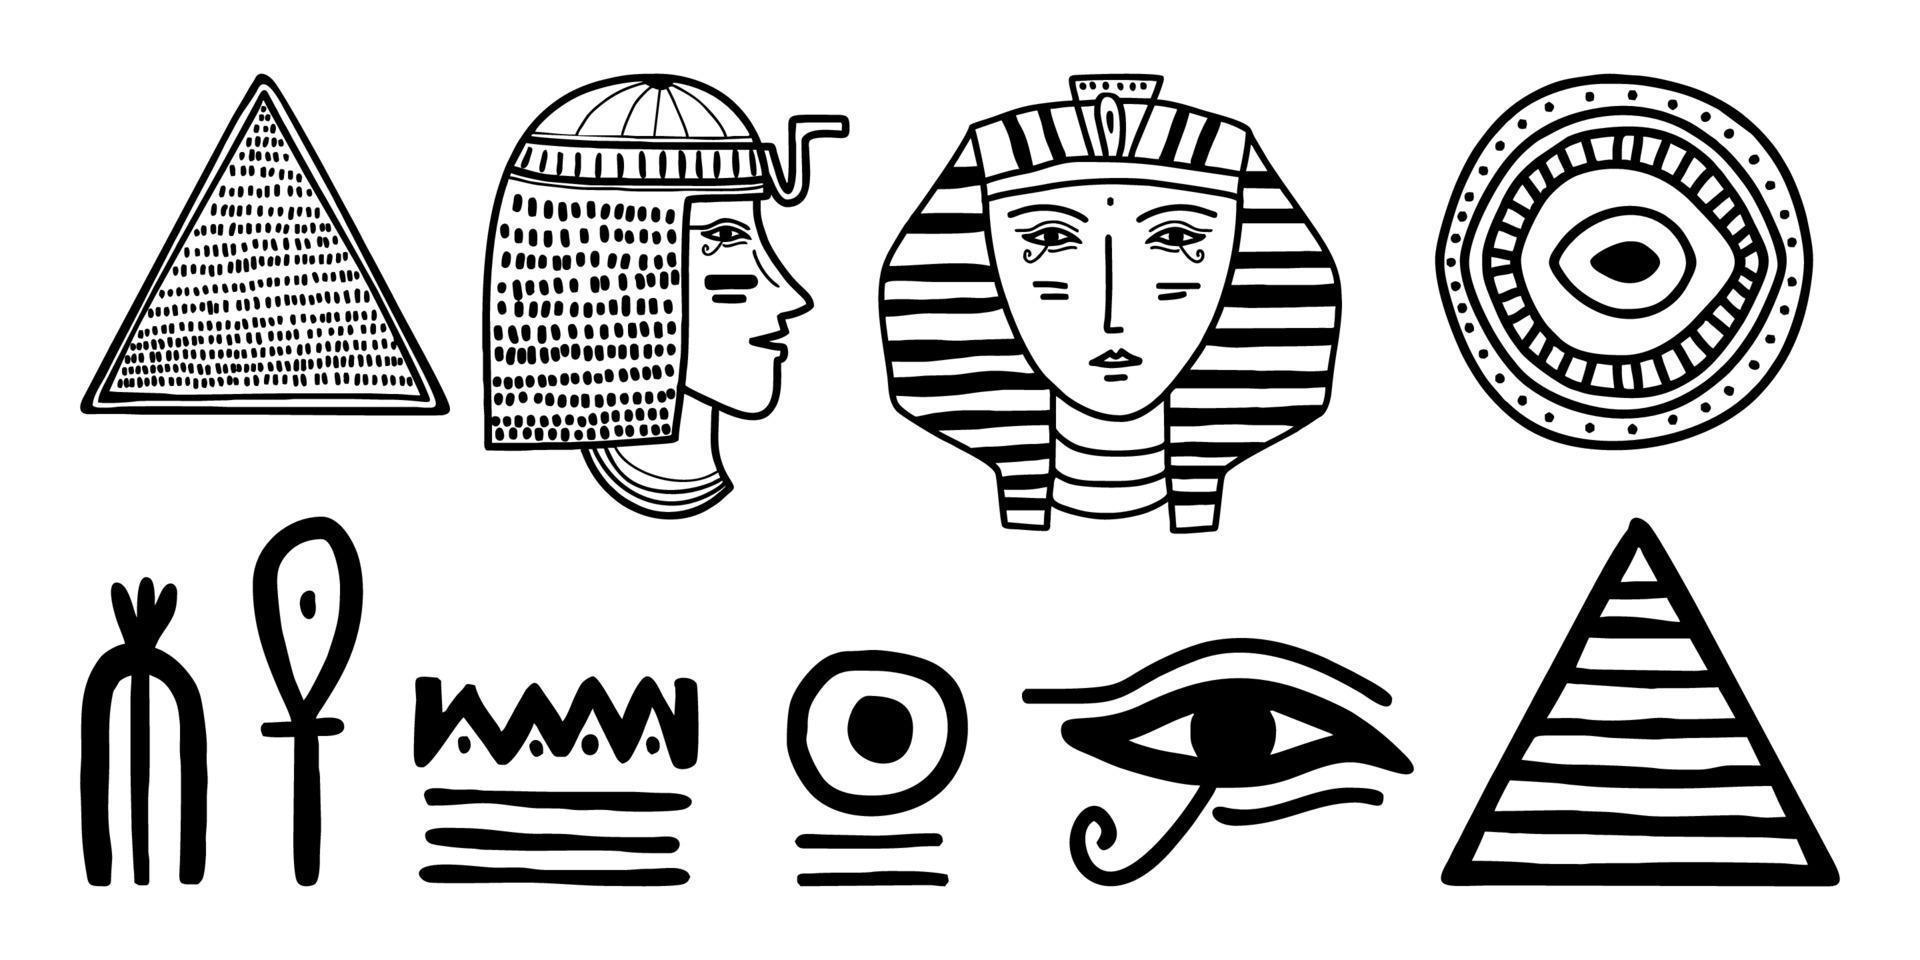 icône ethnique égyptienne art tribal. Egypte croquis dessin animé main silhouettes noires dessinées isolés sur fond blanc vecteur